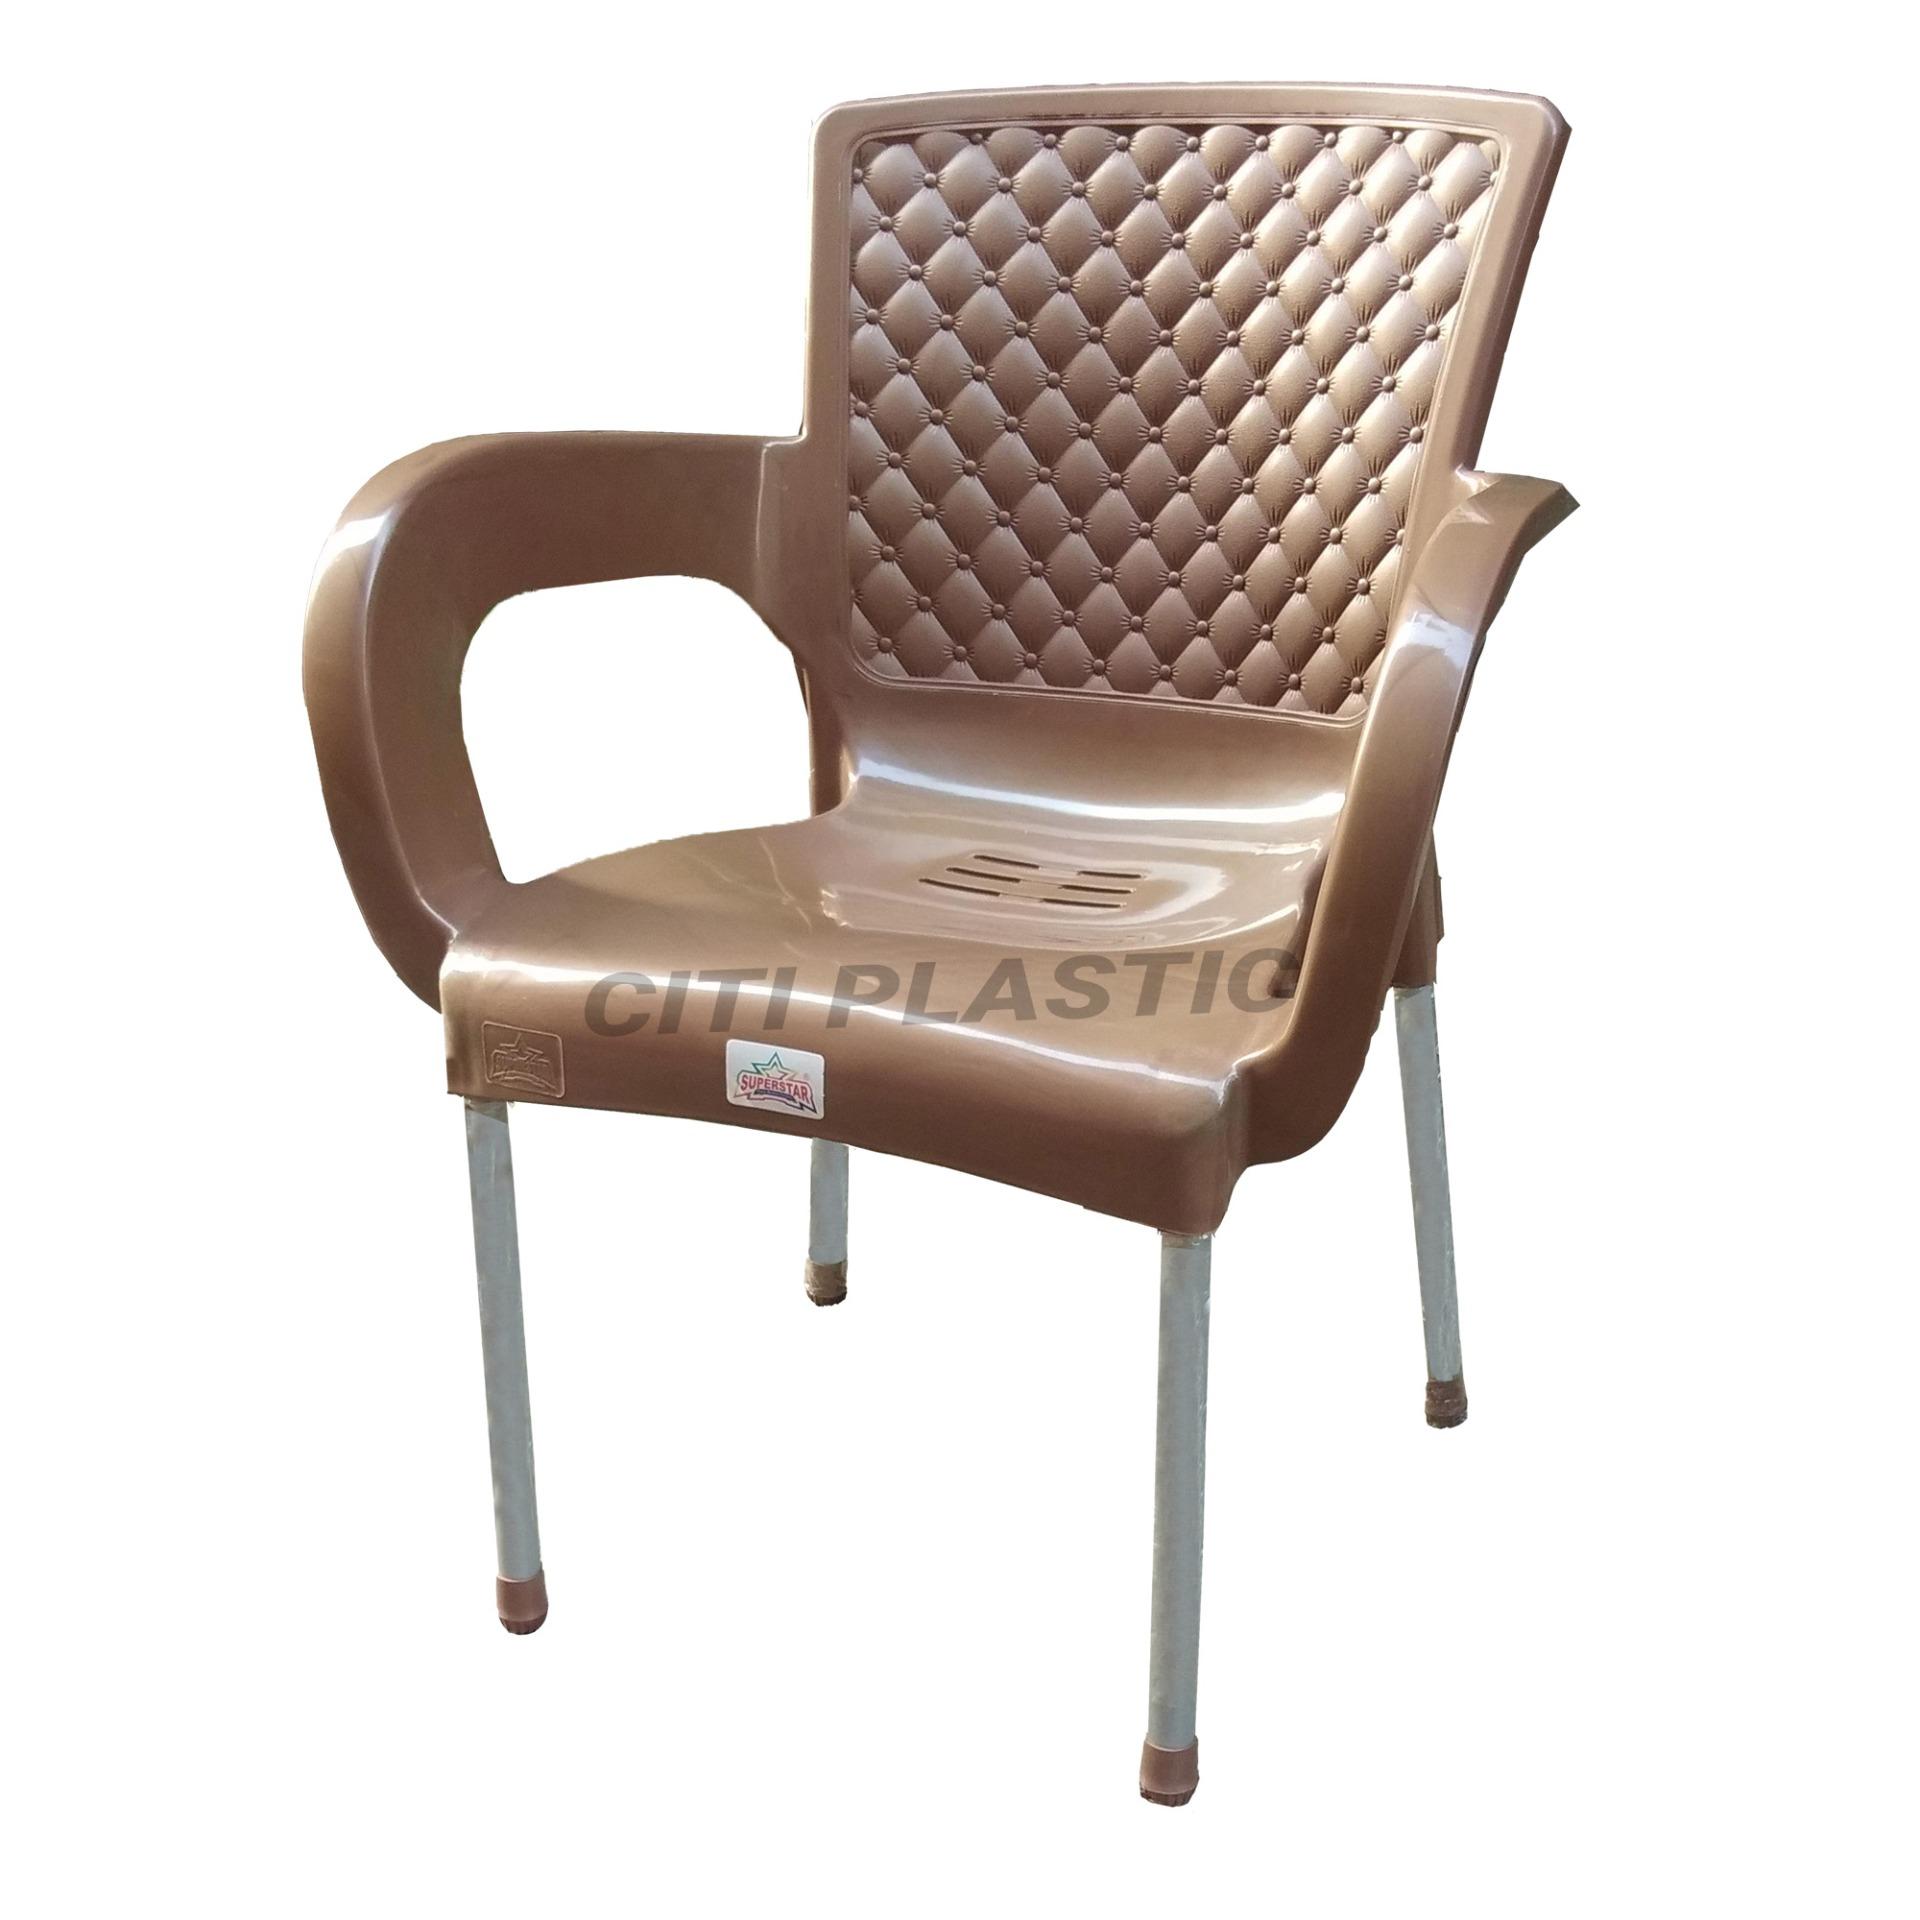 Plastic Chair With Steel Legs Plastic Chair Indoor/outdoor Chair- Golden